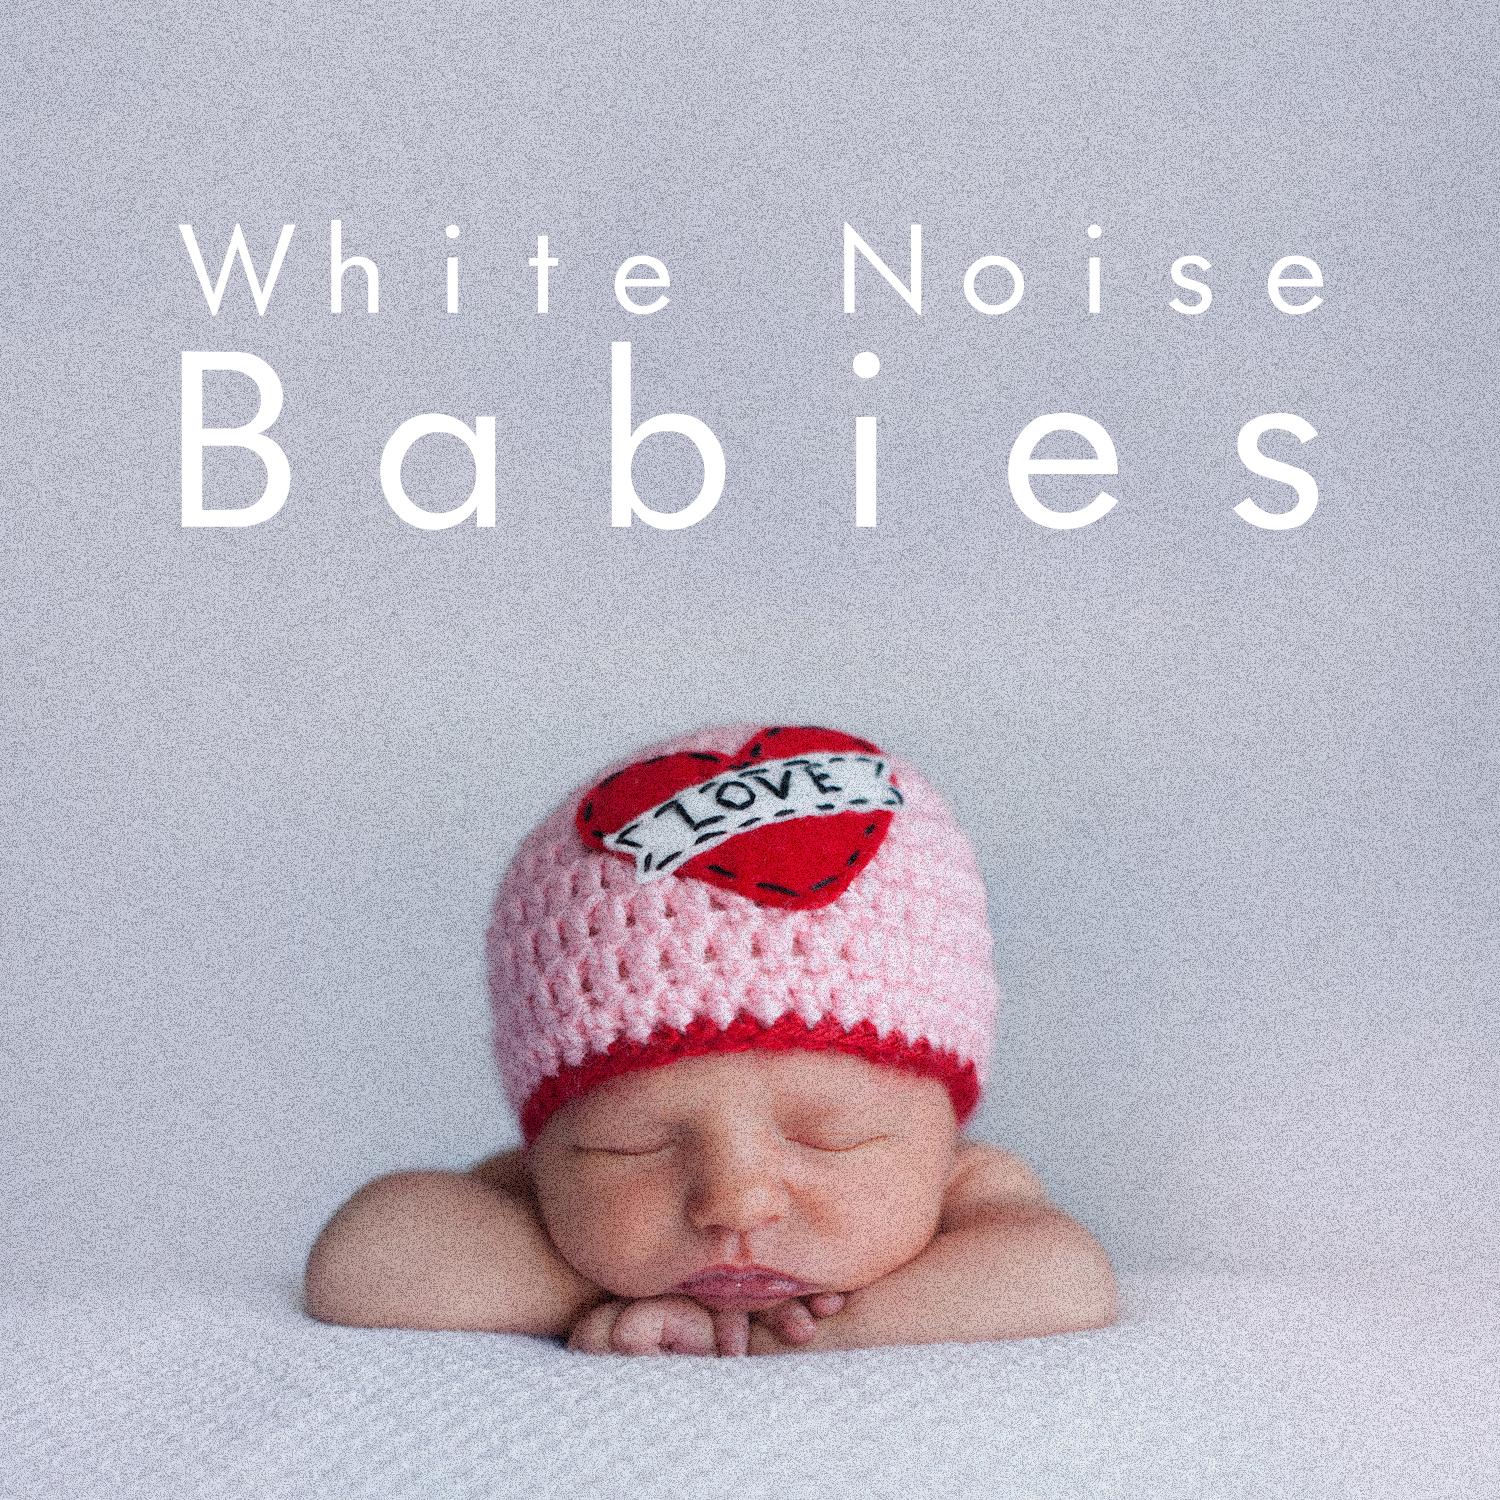 White Noise: Fan Sounds